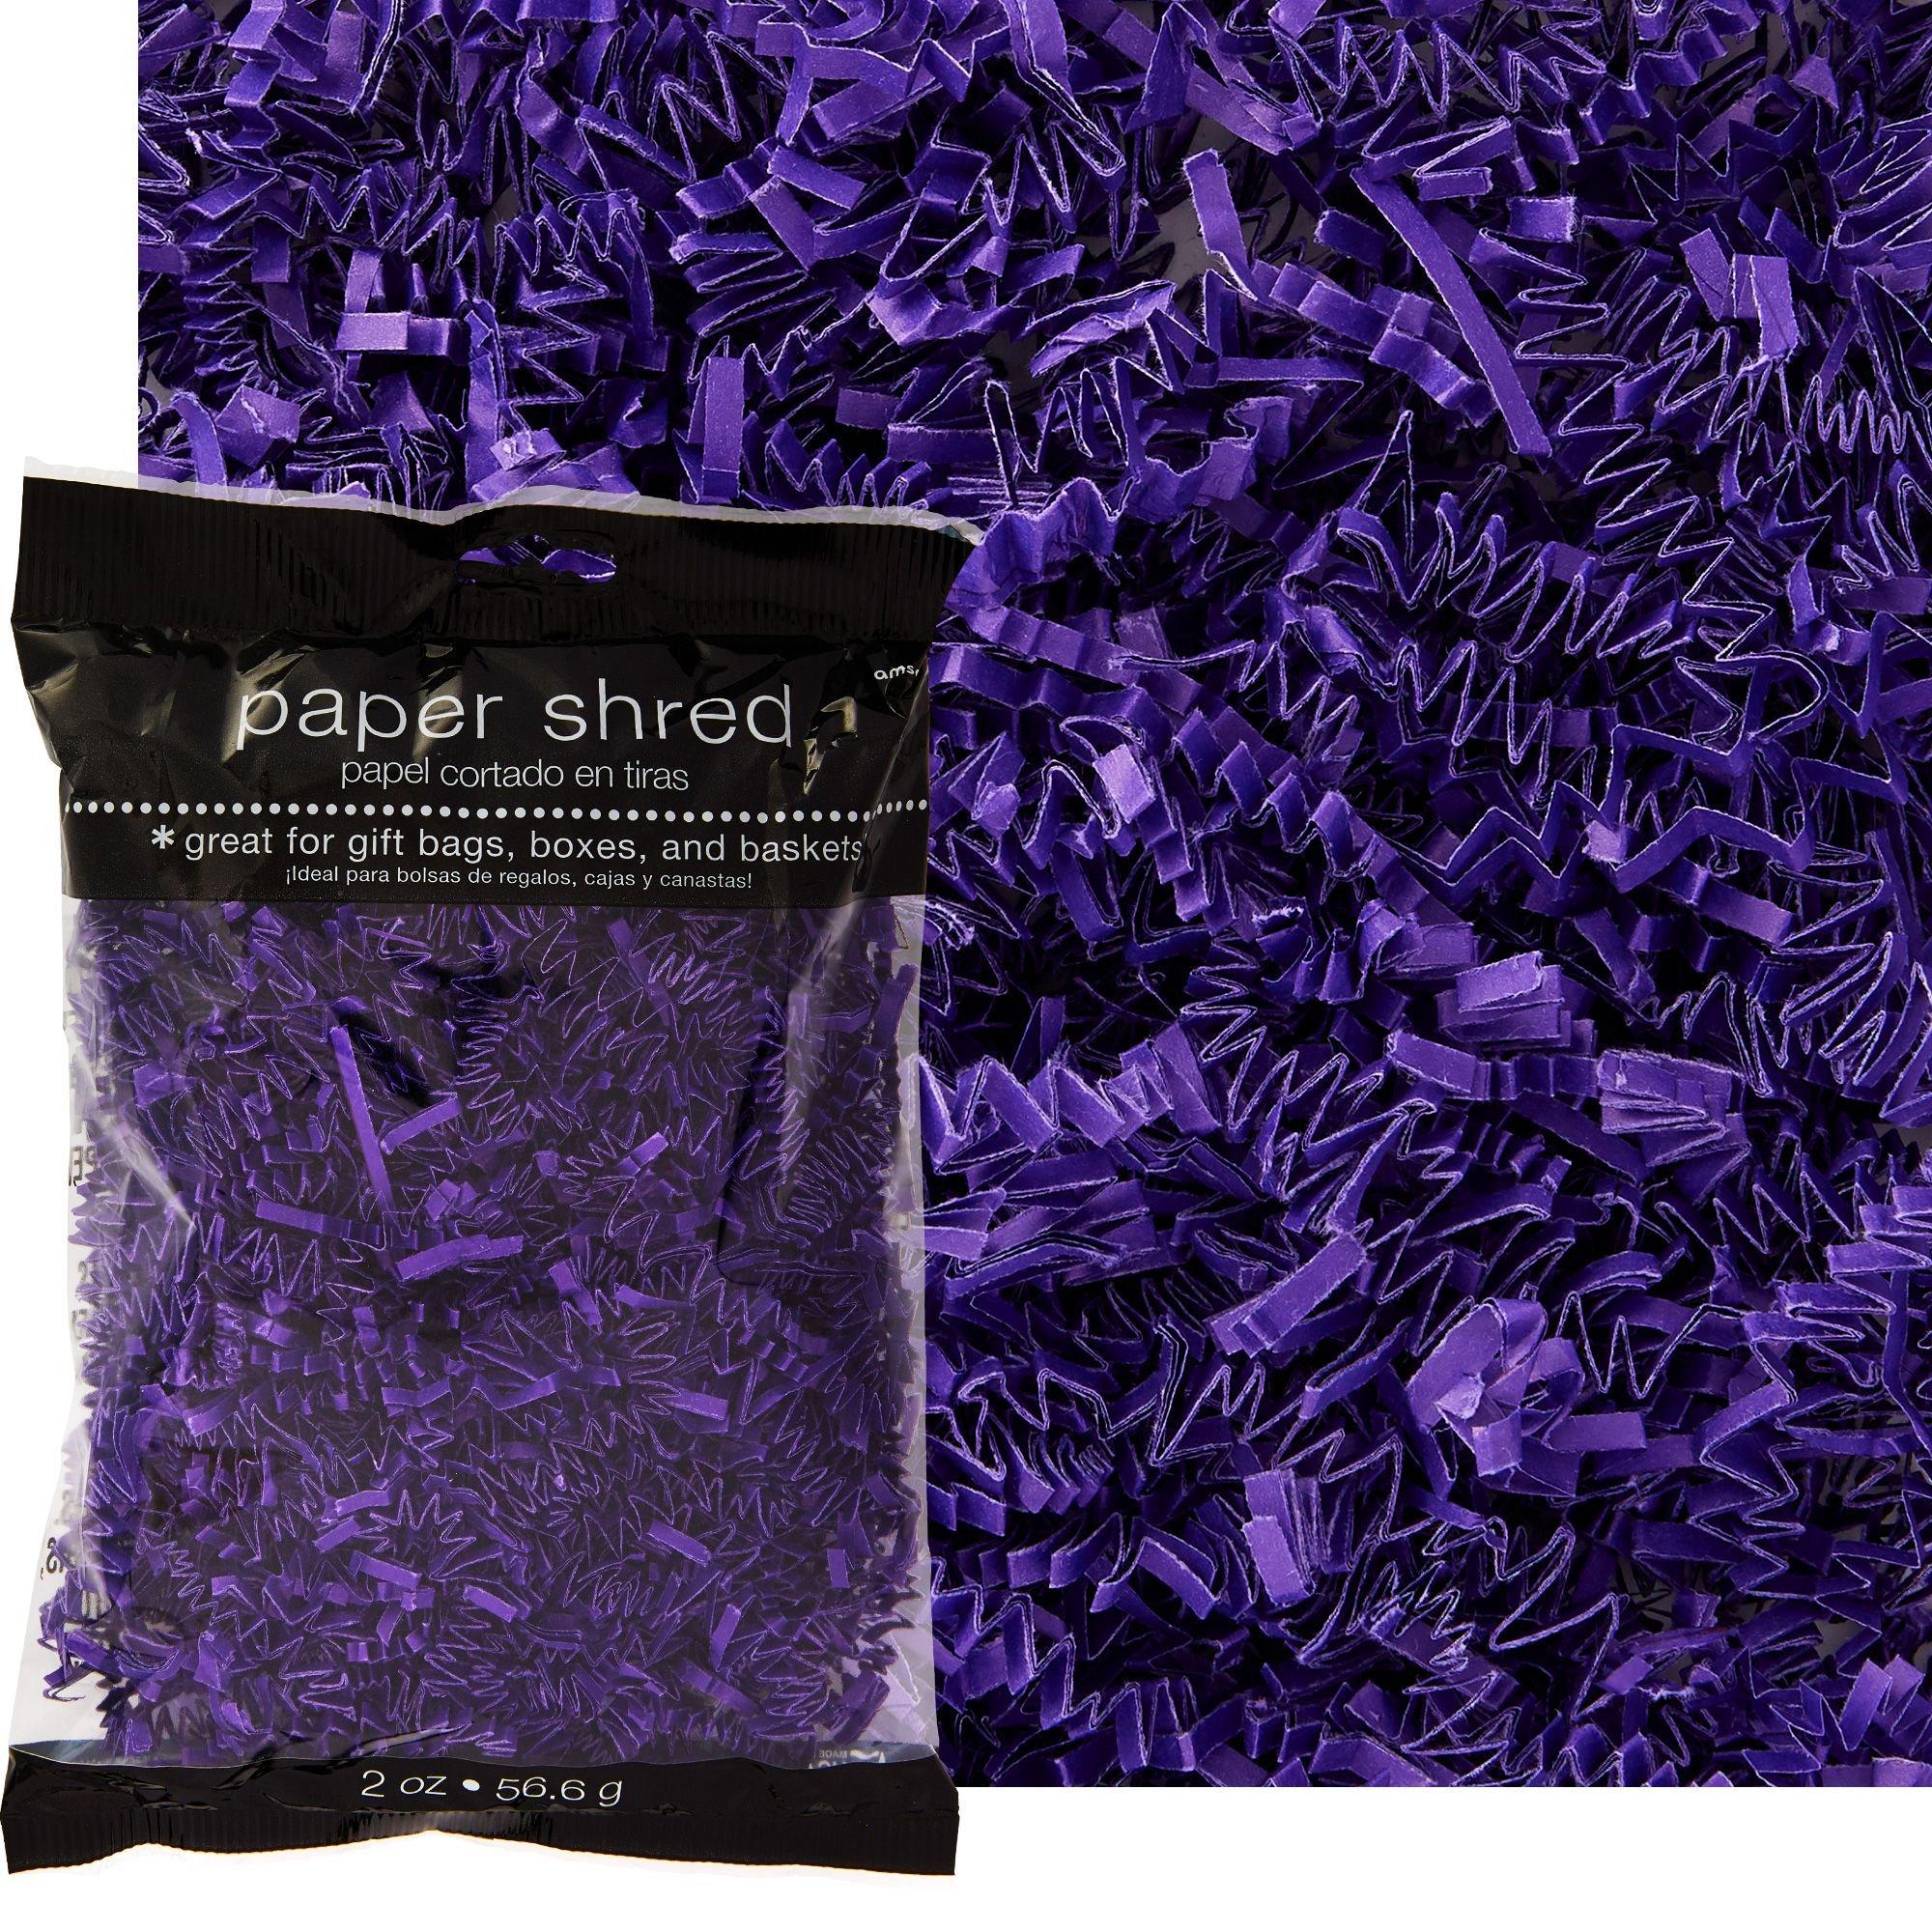 Dark Purple Paper Easter Grass 2oz